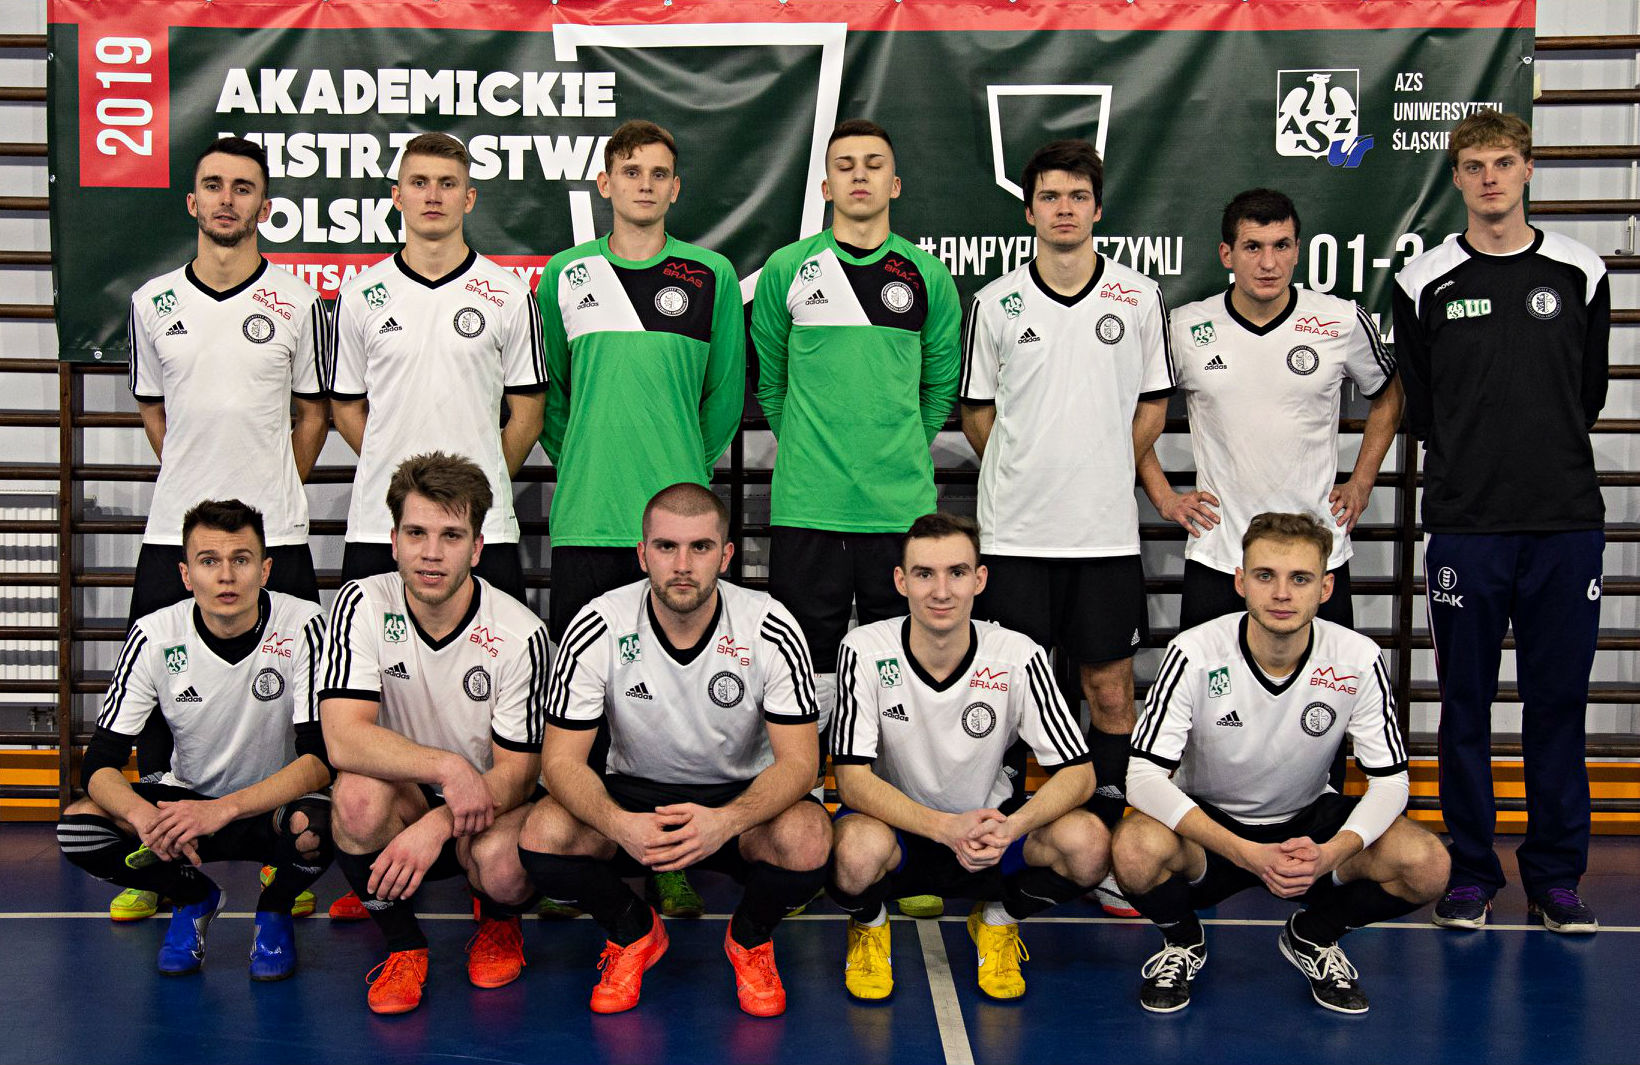 Oto piłkarze UO, którzy wystąpili w półfinale Akademickich Mistrzostw Polski w Futsalu Mężczyzn w Katowicach. W spotkaniu o 11 miejsce nasz zespół uległ miejscowemu Uniwersytetowi Ekonomicznemu po serii rzutów karnych